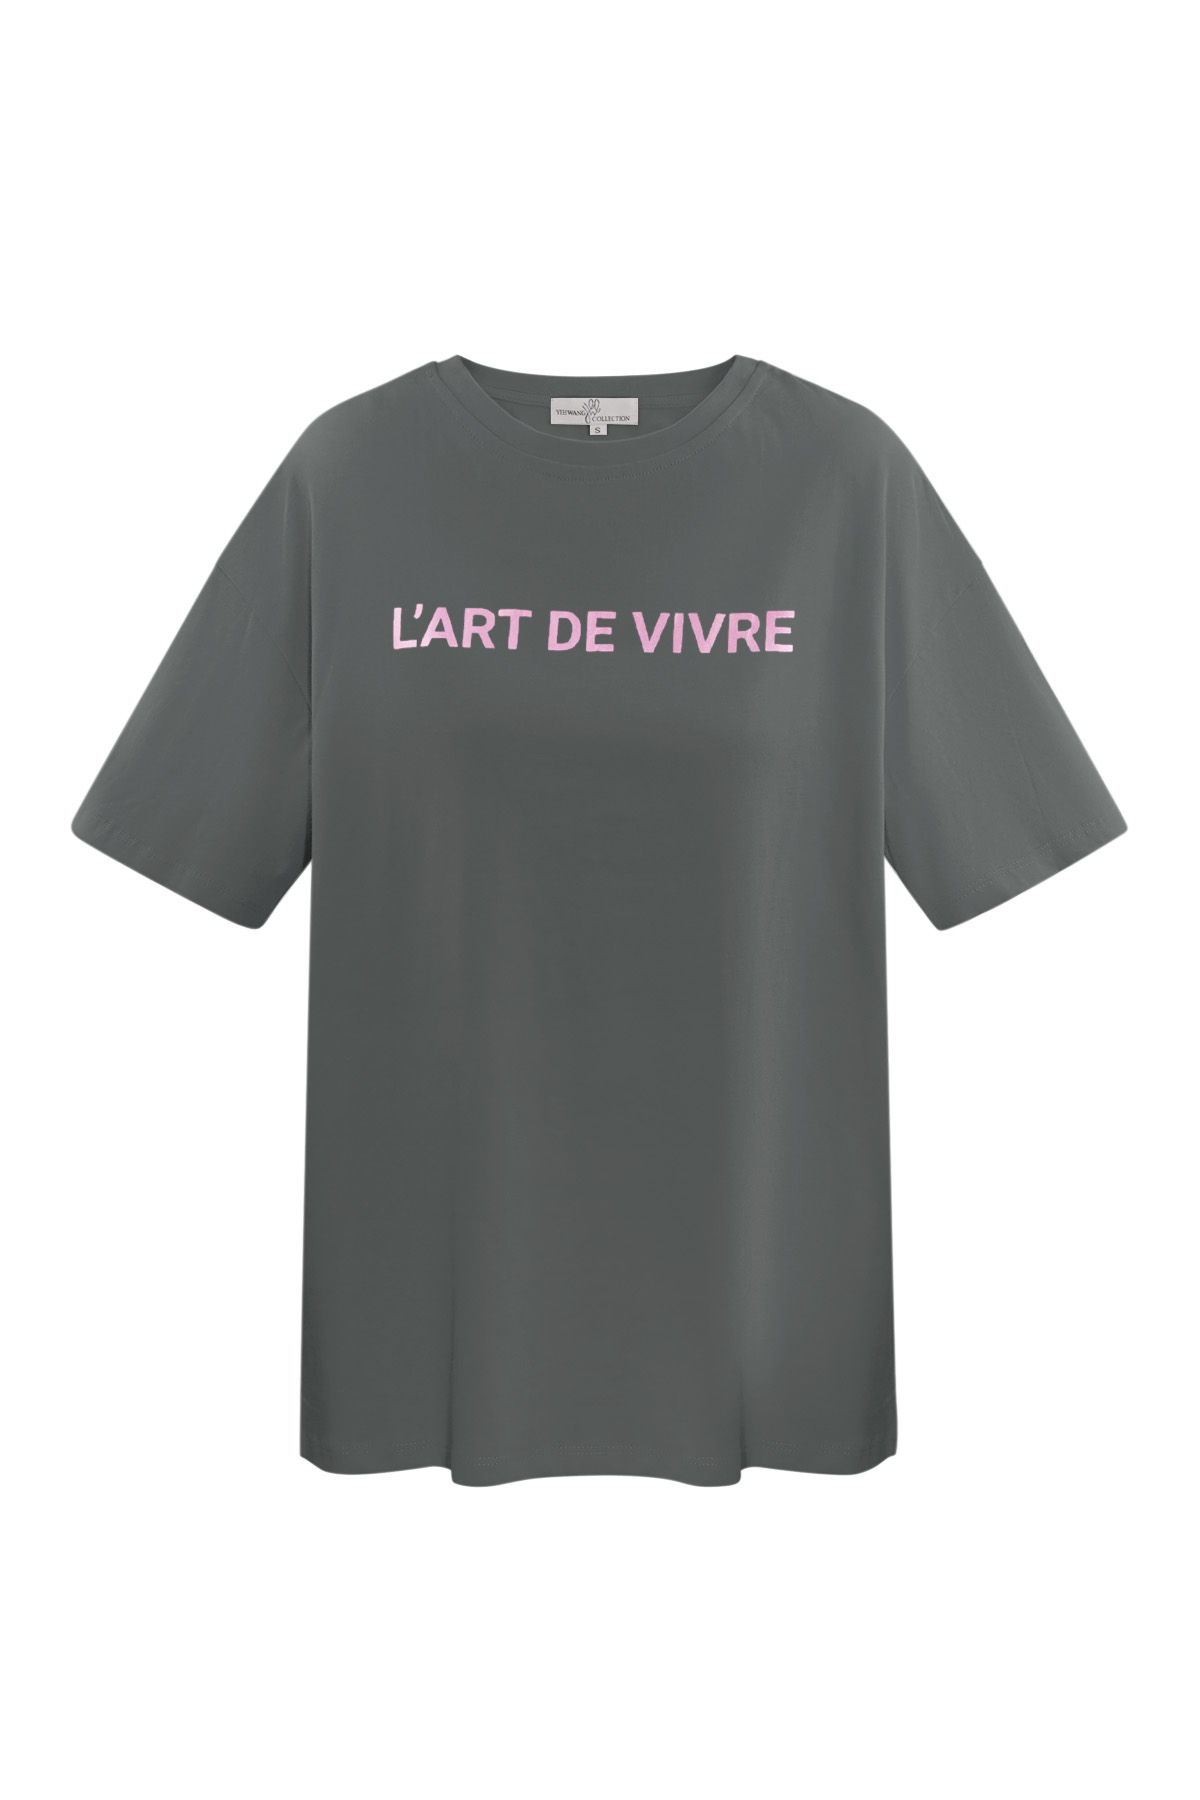 T-Shirt l'art de vivre - grau rosa